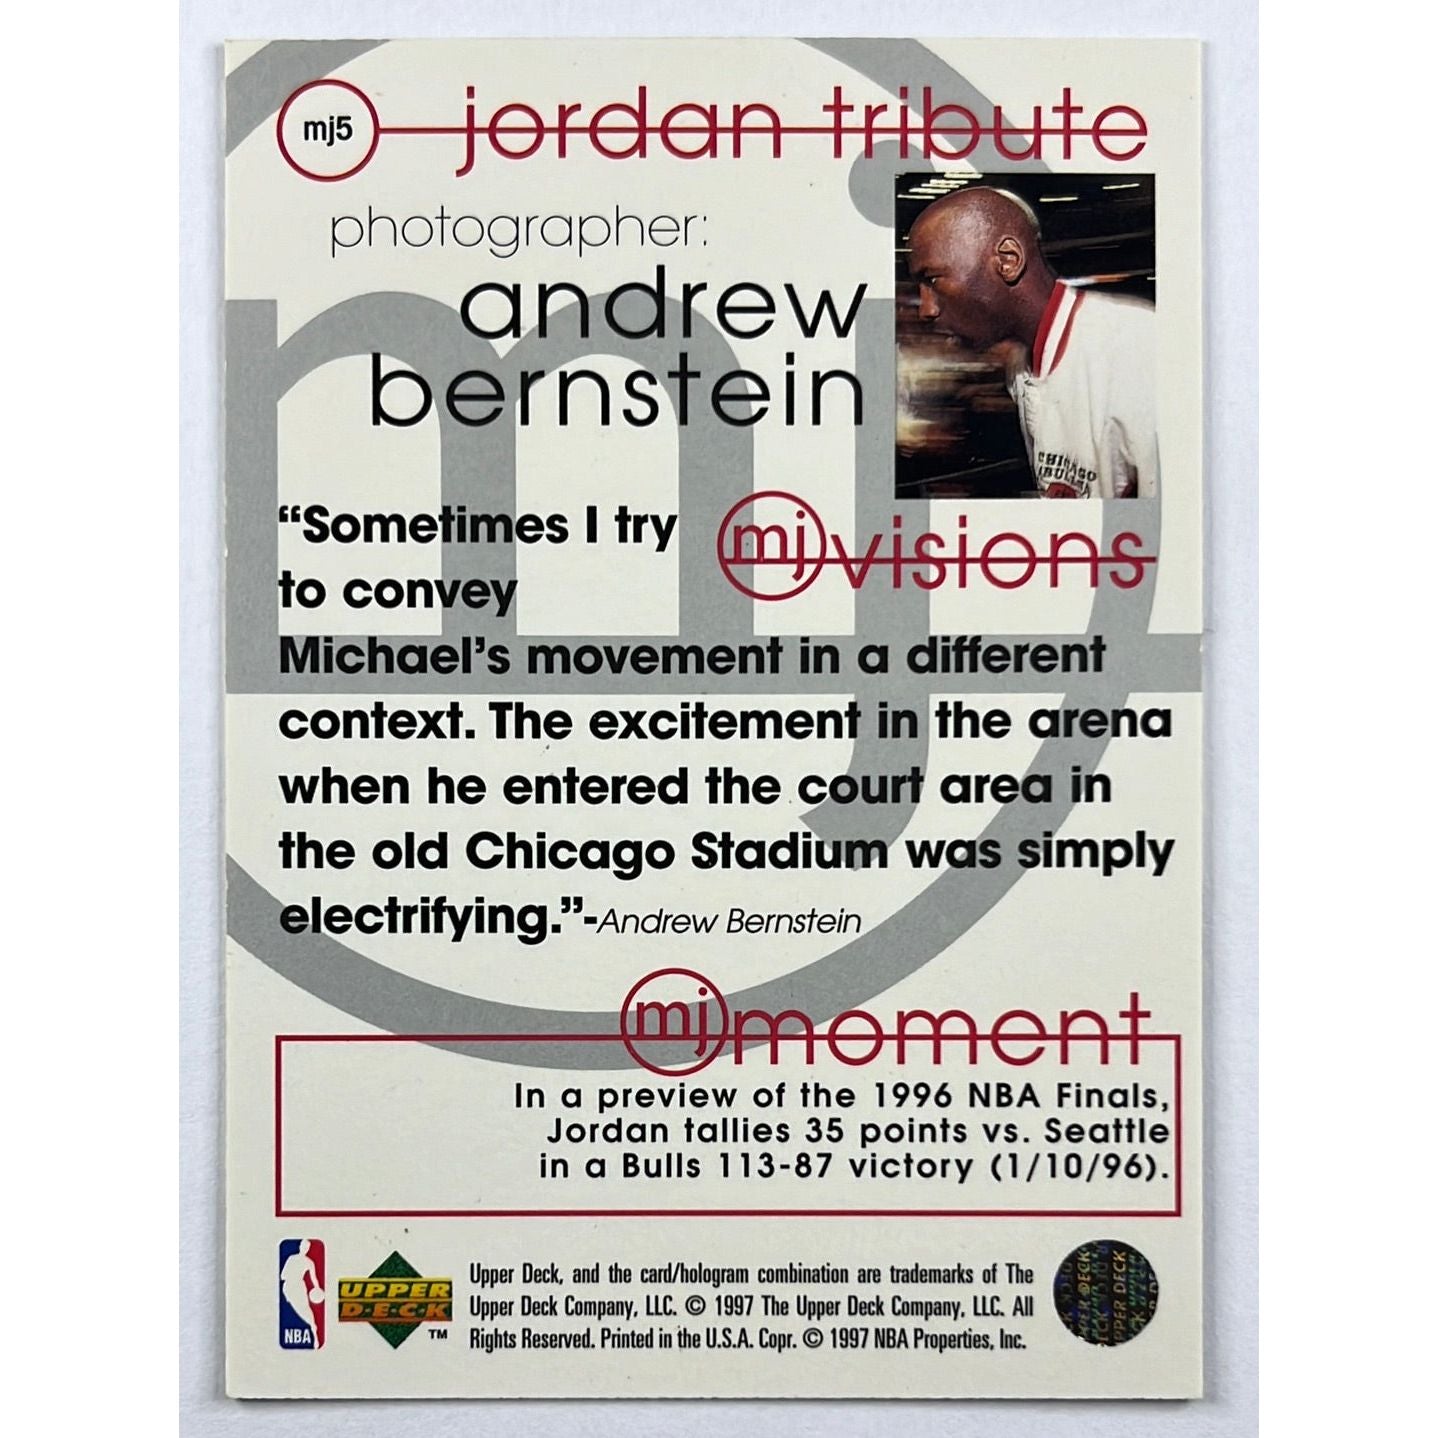 1997-98 Upper Deck Michael Jordan MJ Visions Jordan Tribute MJ5